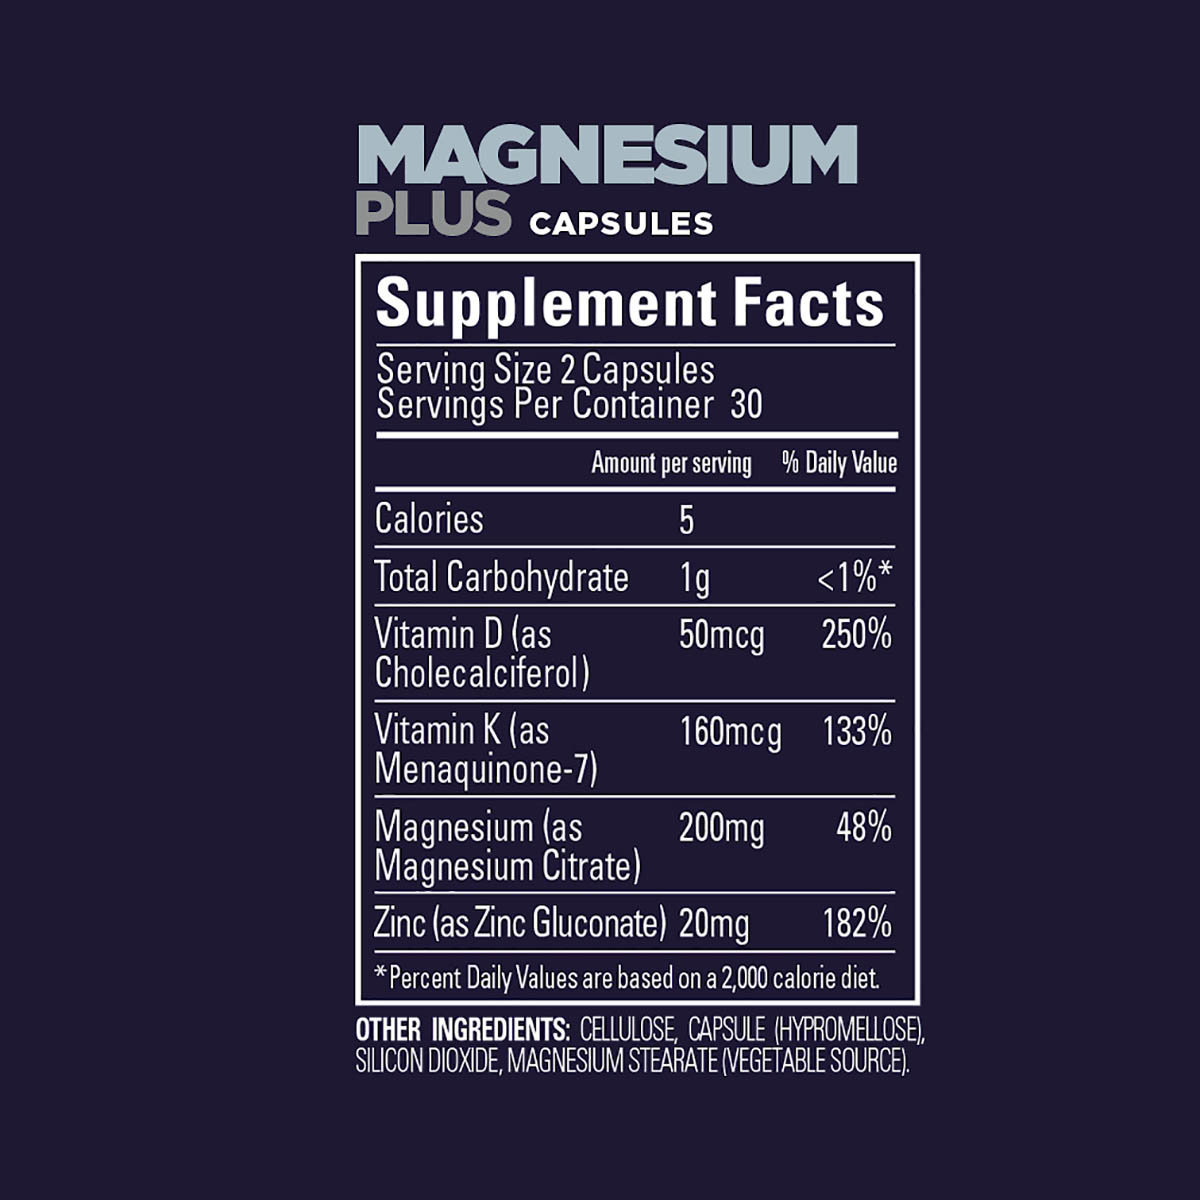 GU Roctane Magnesium Plus Capsules, , large image number null